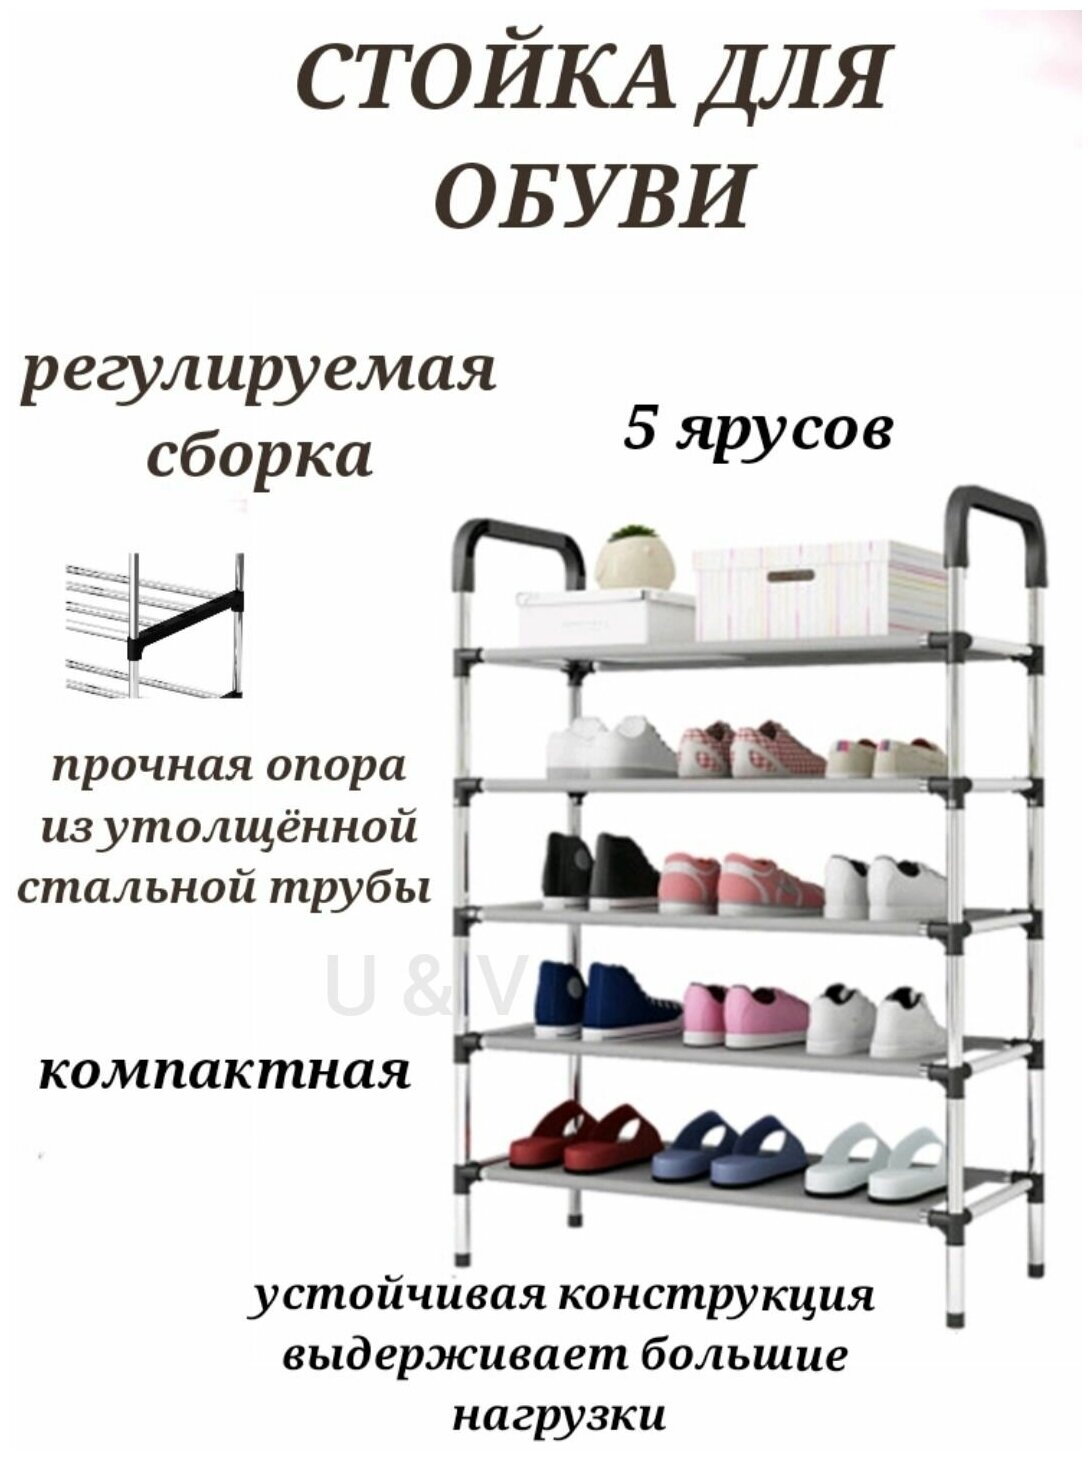 Обувница складная для обуви 5 ярусов белая, этажерка для обуви, складная обувница, подставка для обуви.